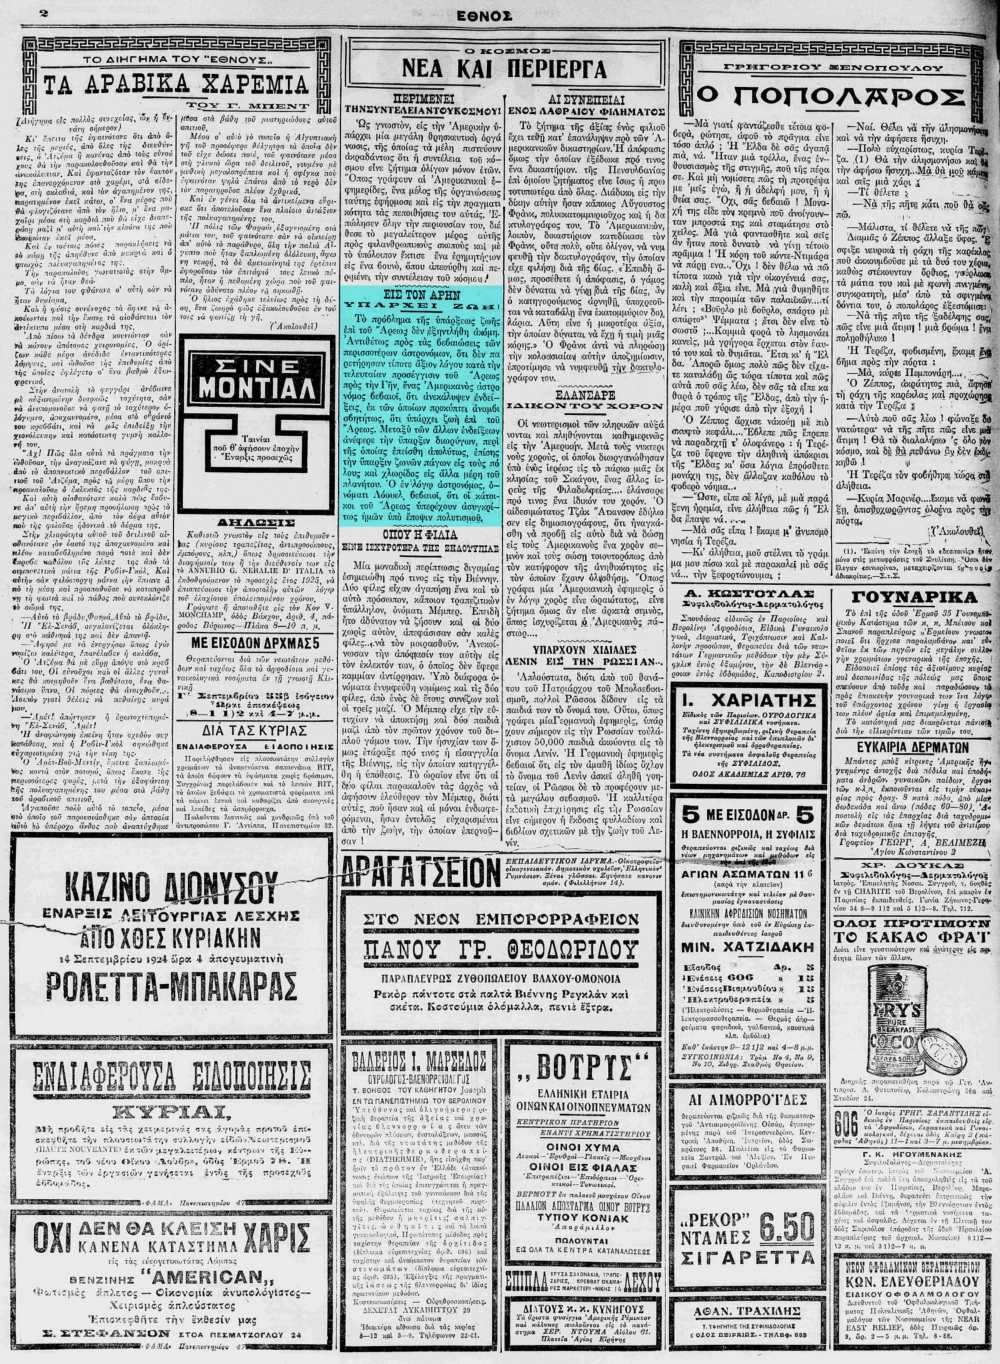 Το άρθρο, όπως δημοσιεύθηκε στην εφημερίδα "ΕΘΝΟΣ", στις 13/09/1924